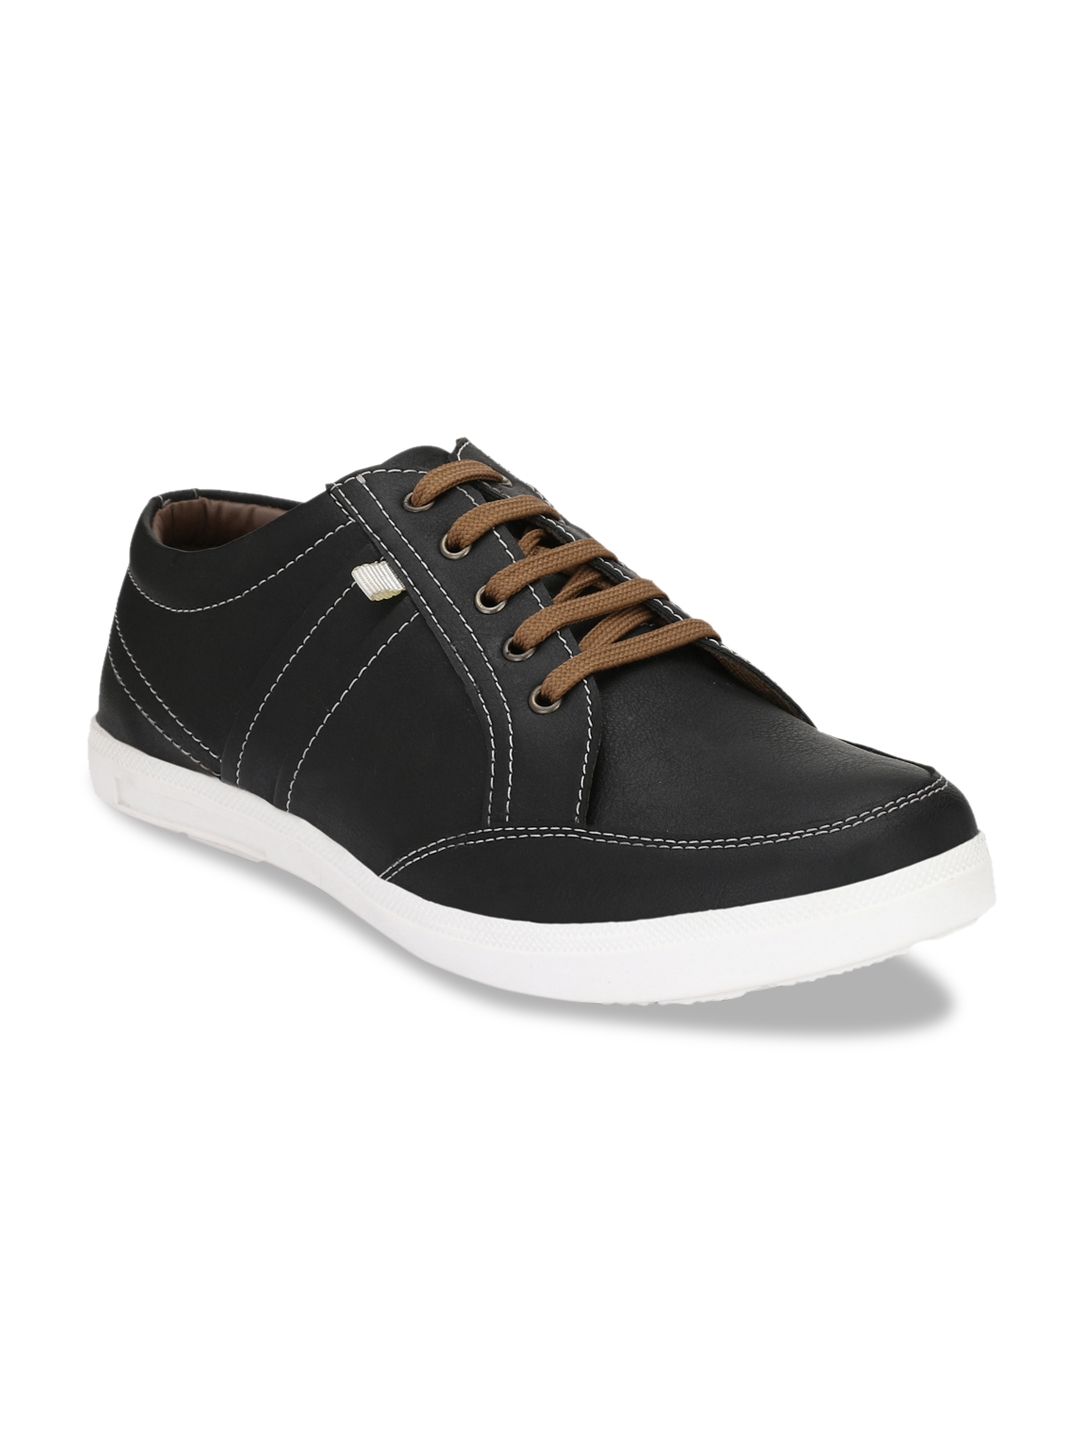 Buy John Karsun Men Black Sneakers - Casual Shoes for Men 9882059 | Myntra